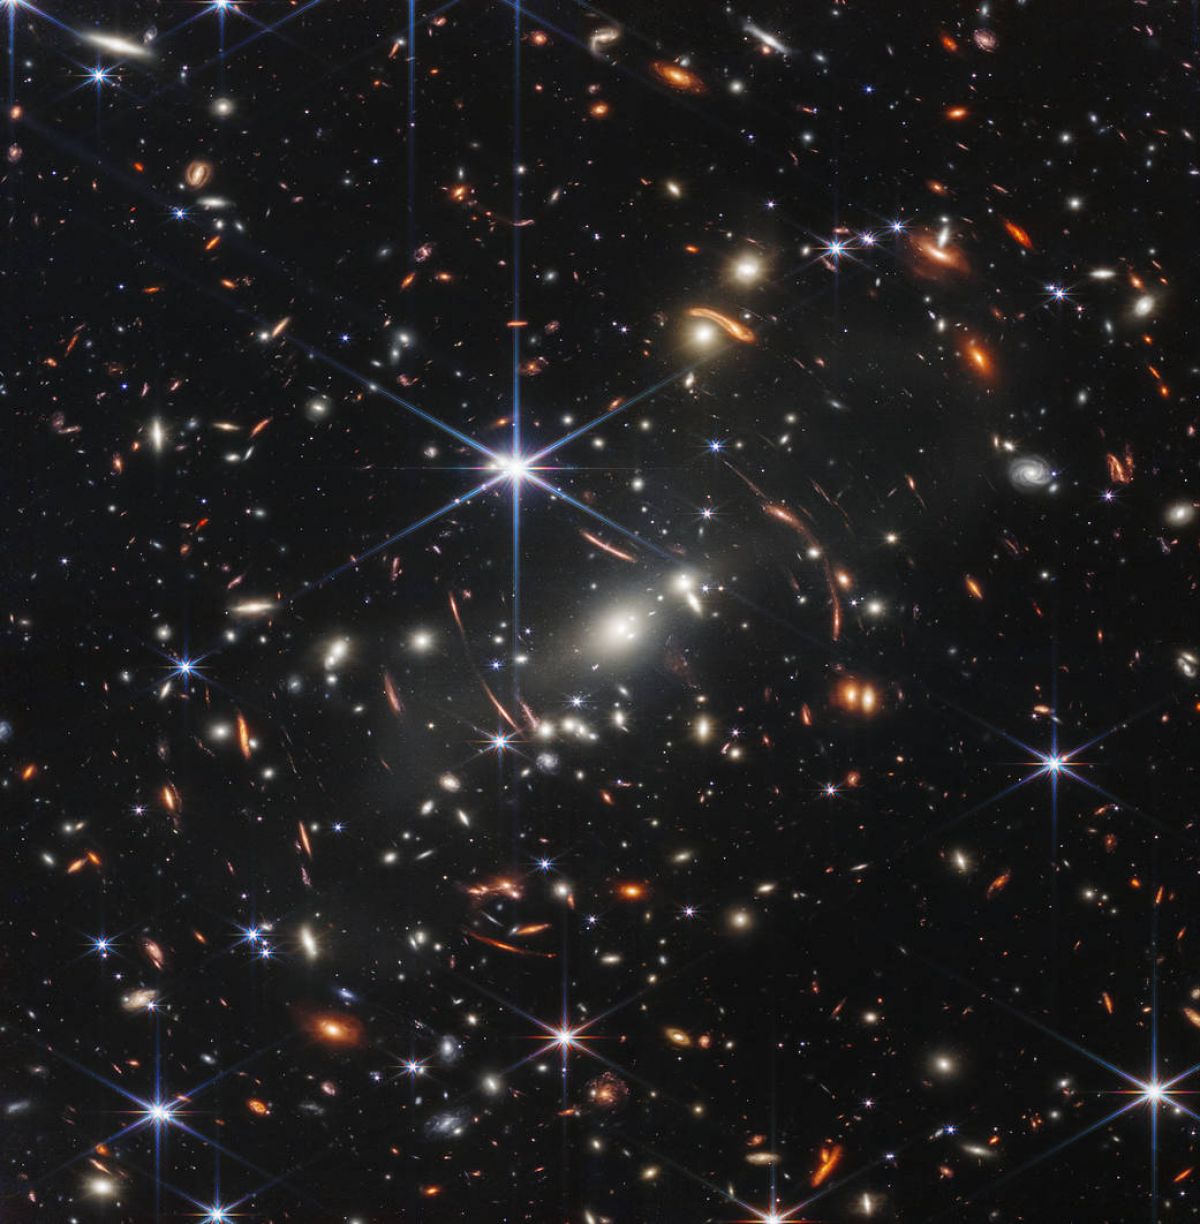 Уэбб сделал самое глубокое инфракрасное изображение Вселенной - фото